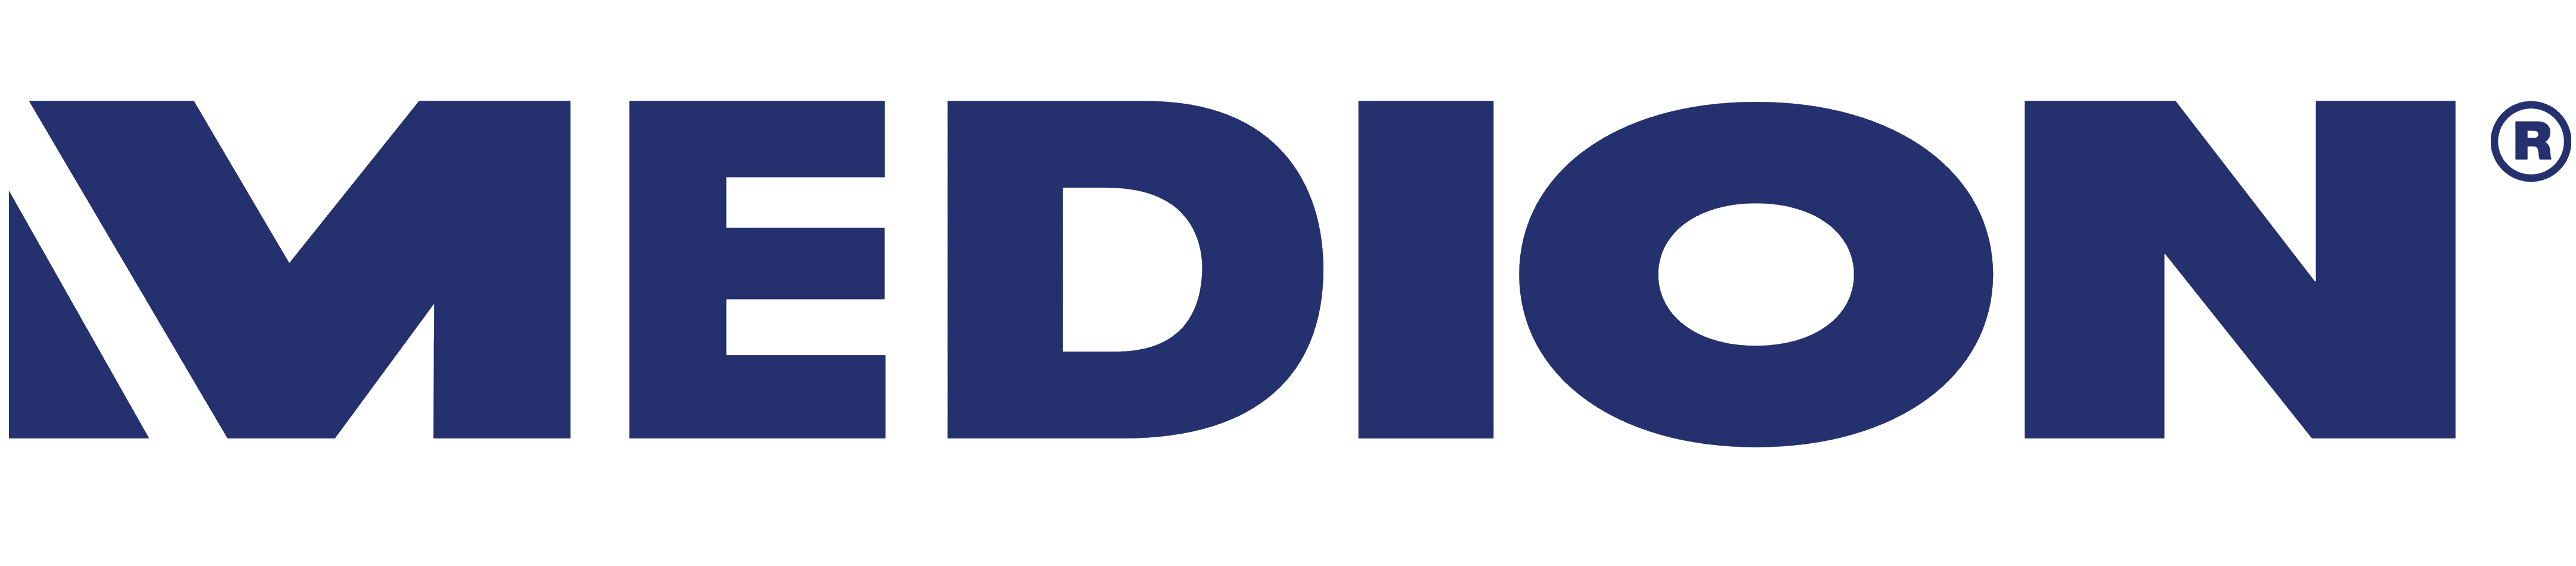 Medion logo, logotype